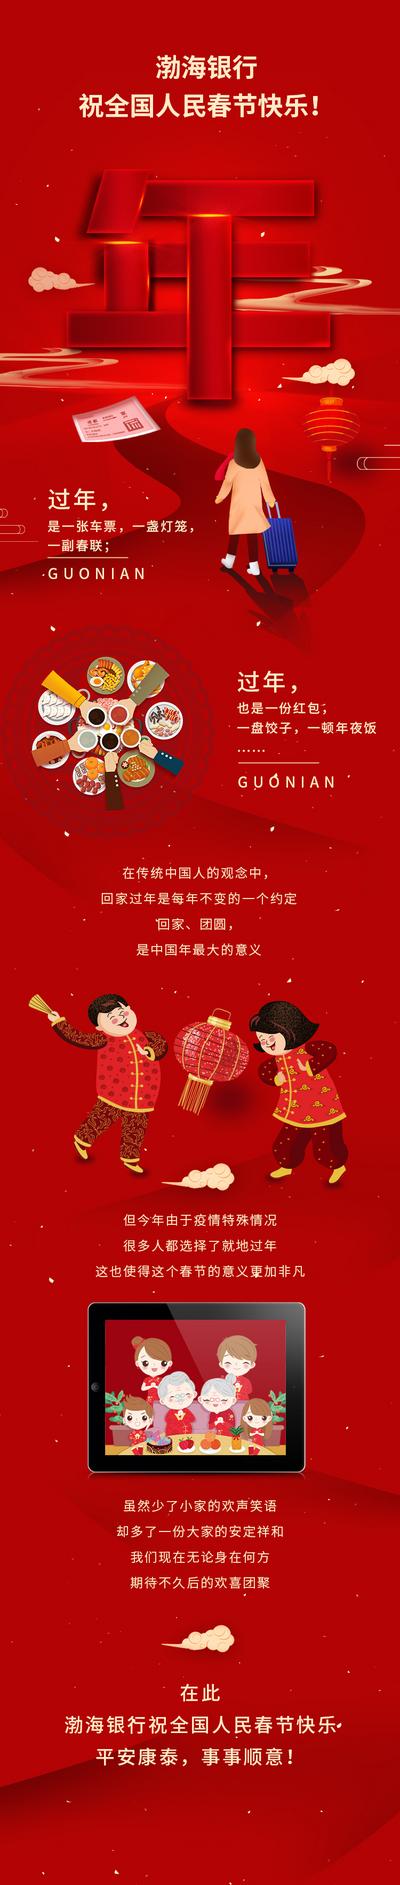 南门网 海报 长图 返乡 回家 过年 新年 春节 团圆